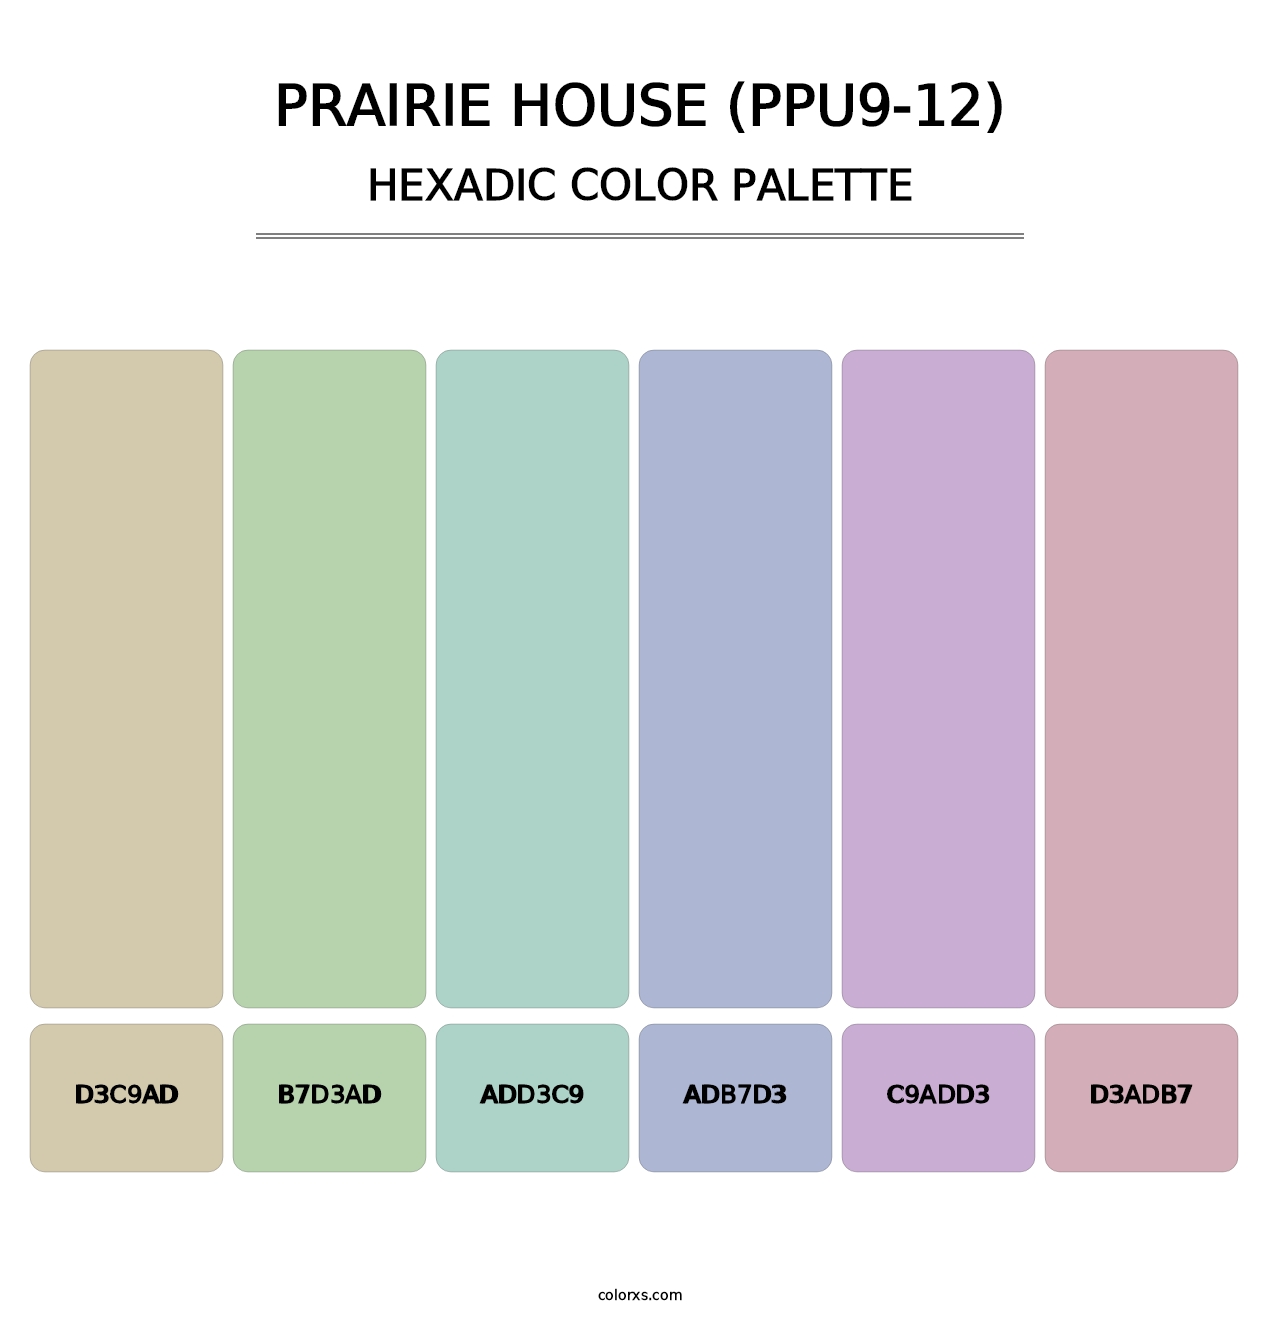 Prairie House (PPU9-12) - Hexadic Color Palette